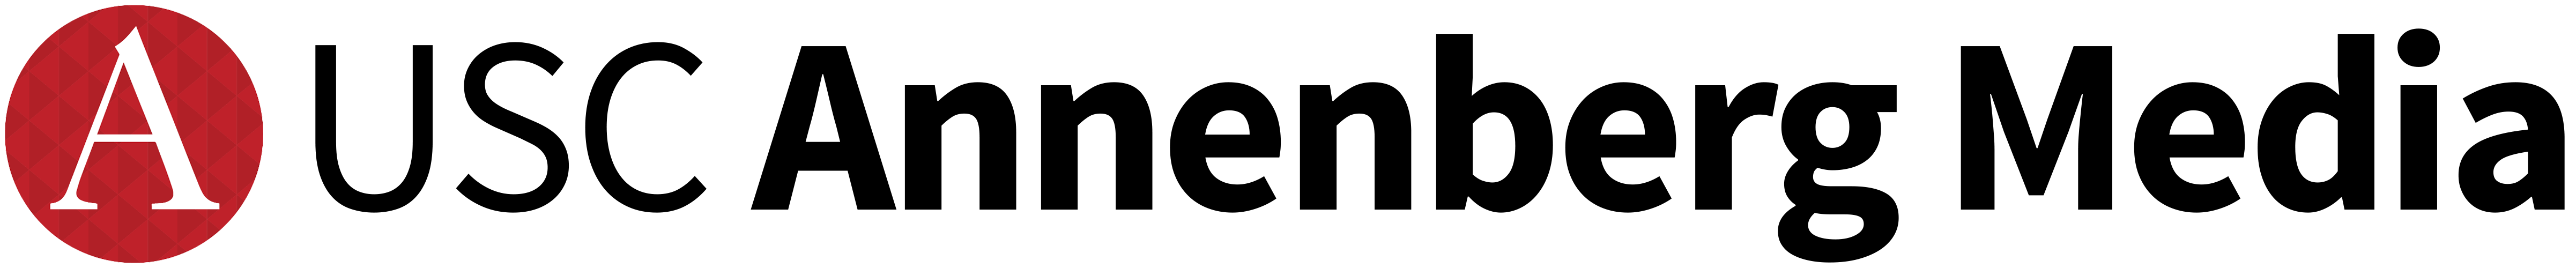 Annenberg Media logo